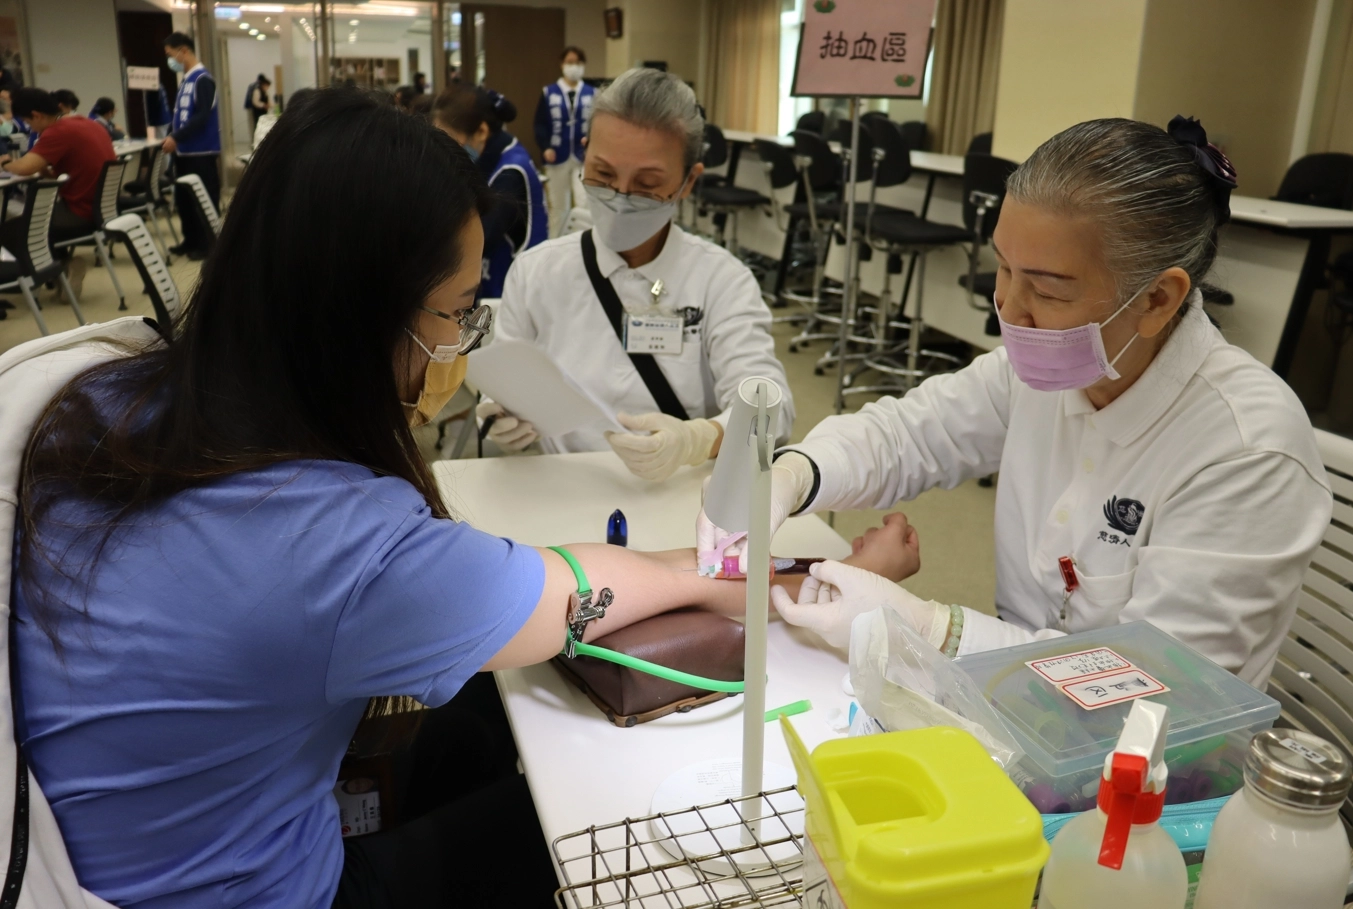 有豐富捐血經驗的員工王小姐，可以很快理解捐血與捐髓是大同小異的方式，不但上了一課，更用實際行動加入驗血建檔行列。